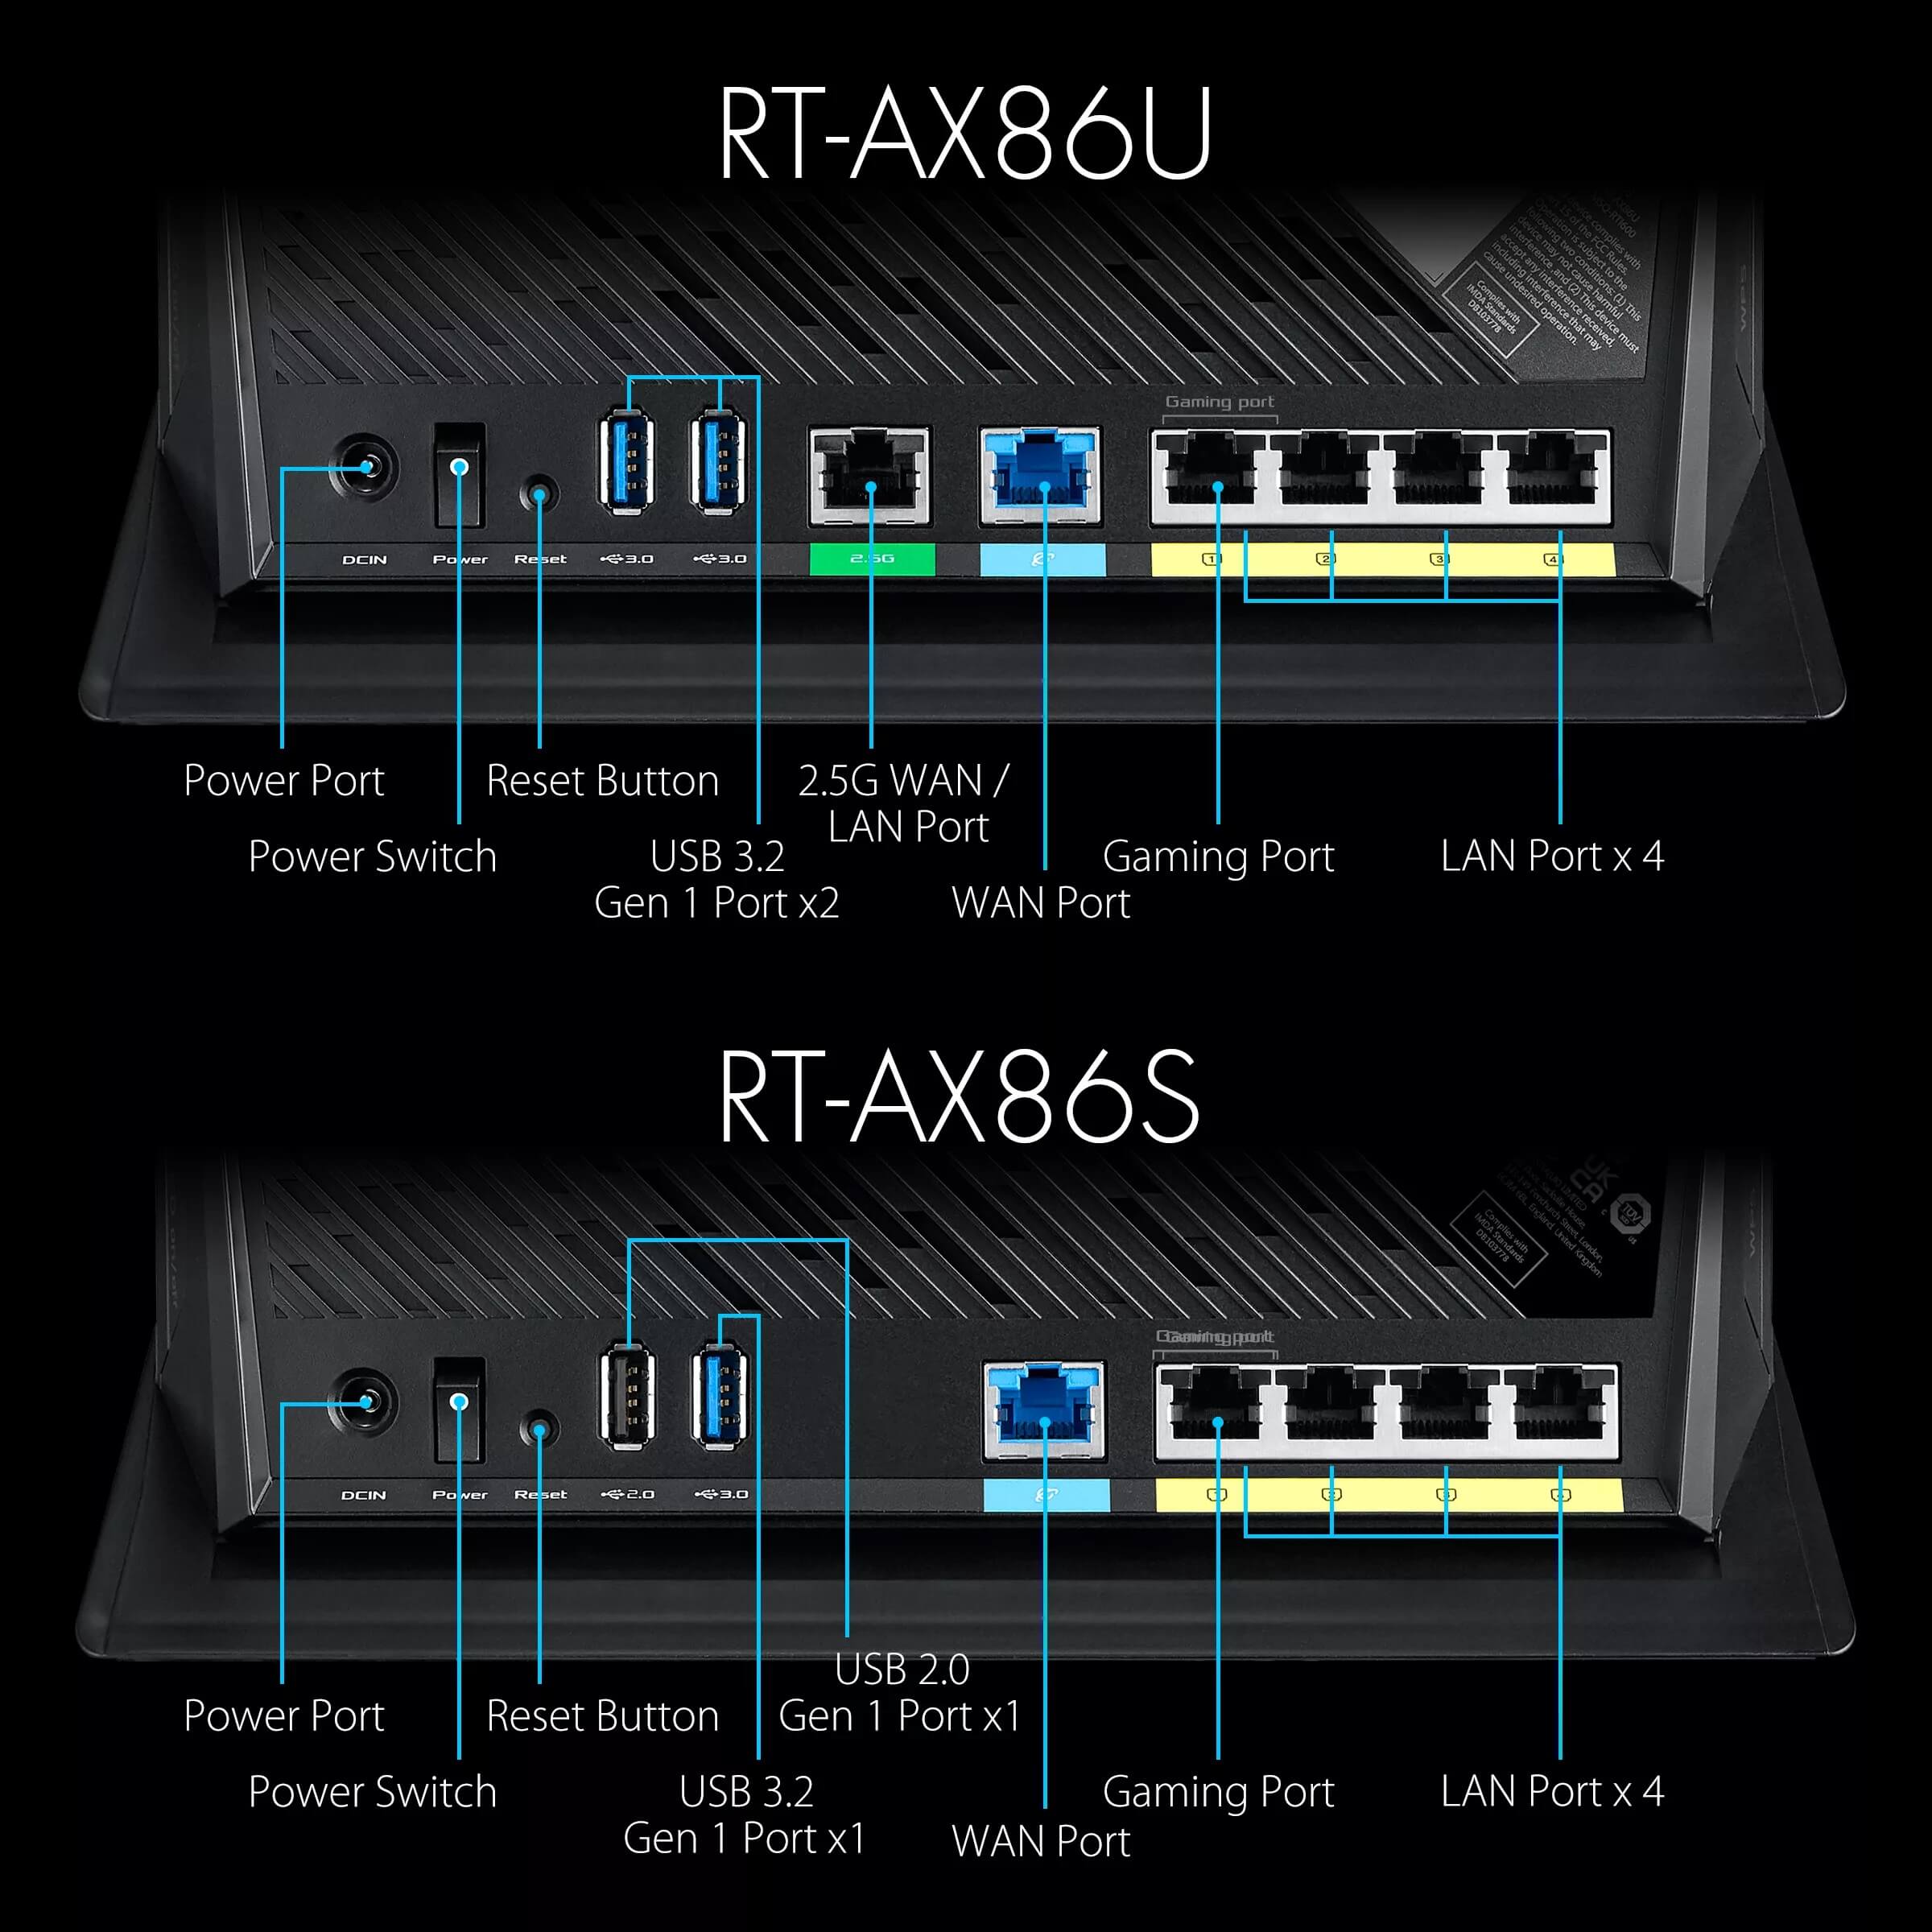 ASUS-RT-AX86U-AX5700-Gaming-Router